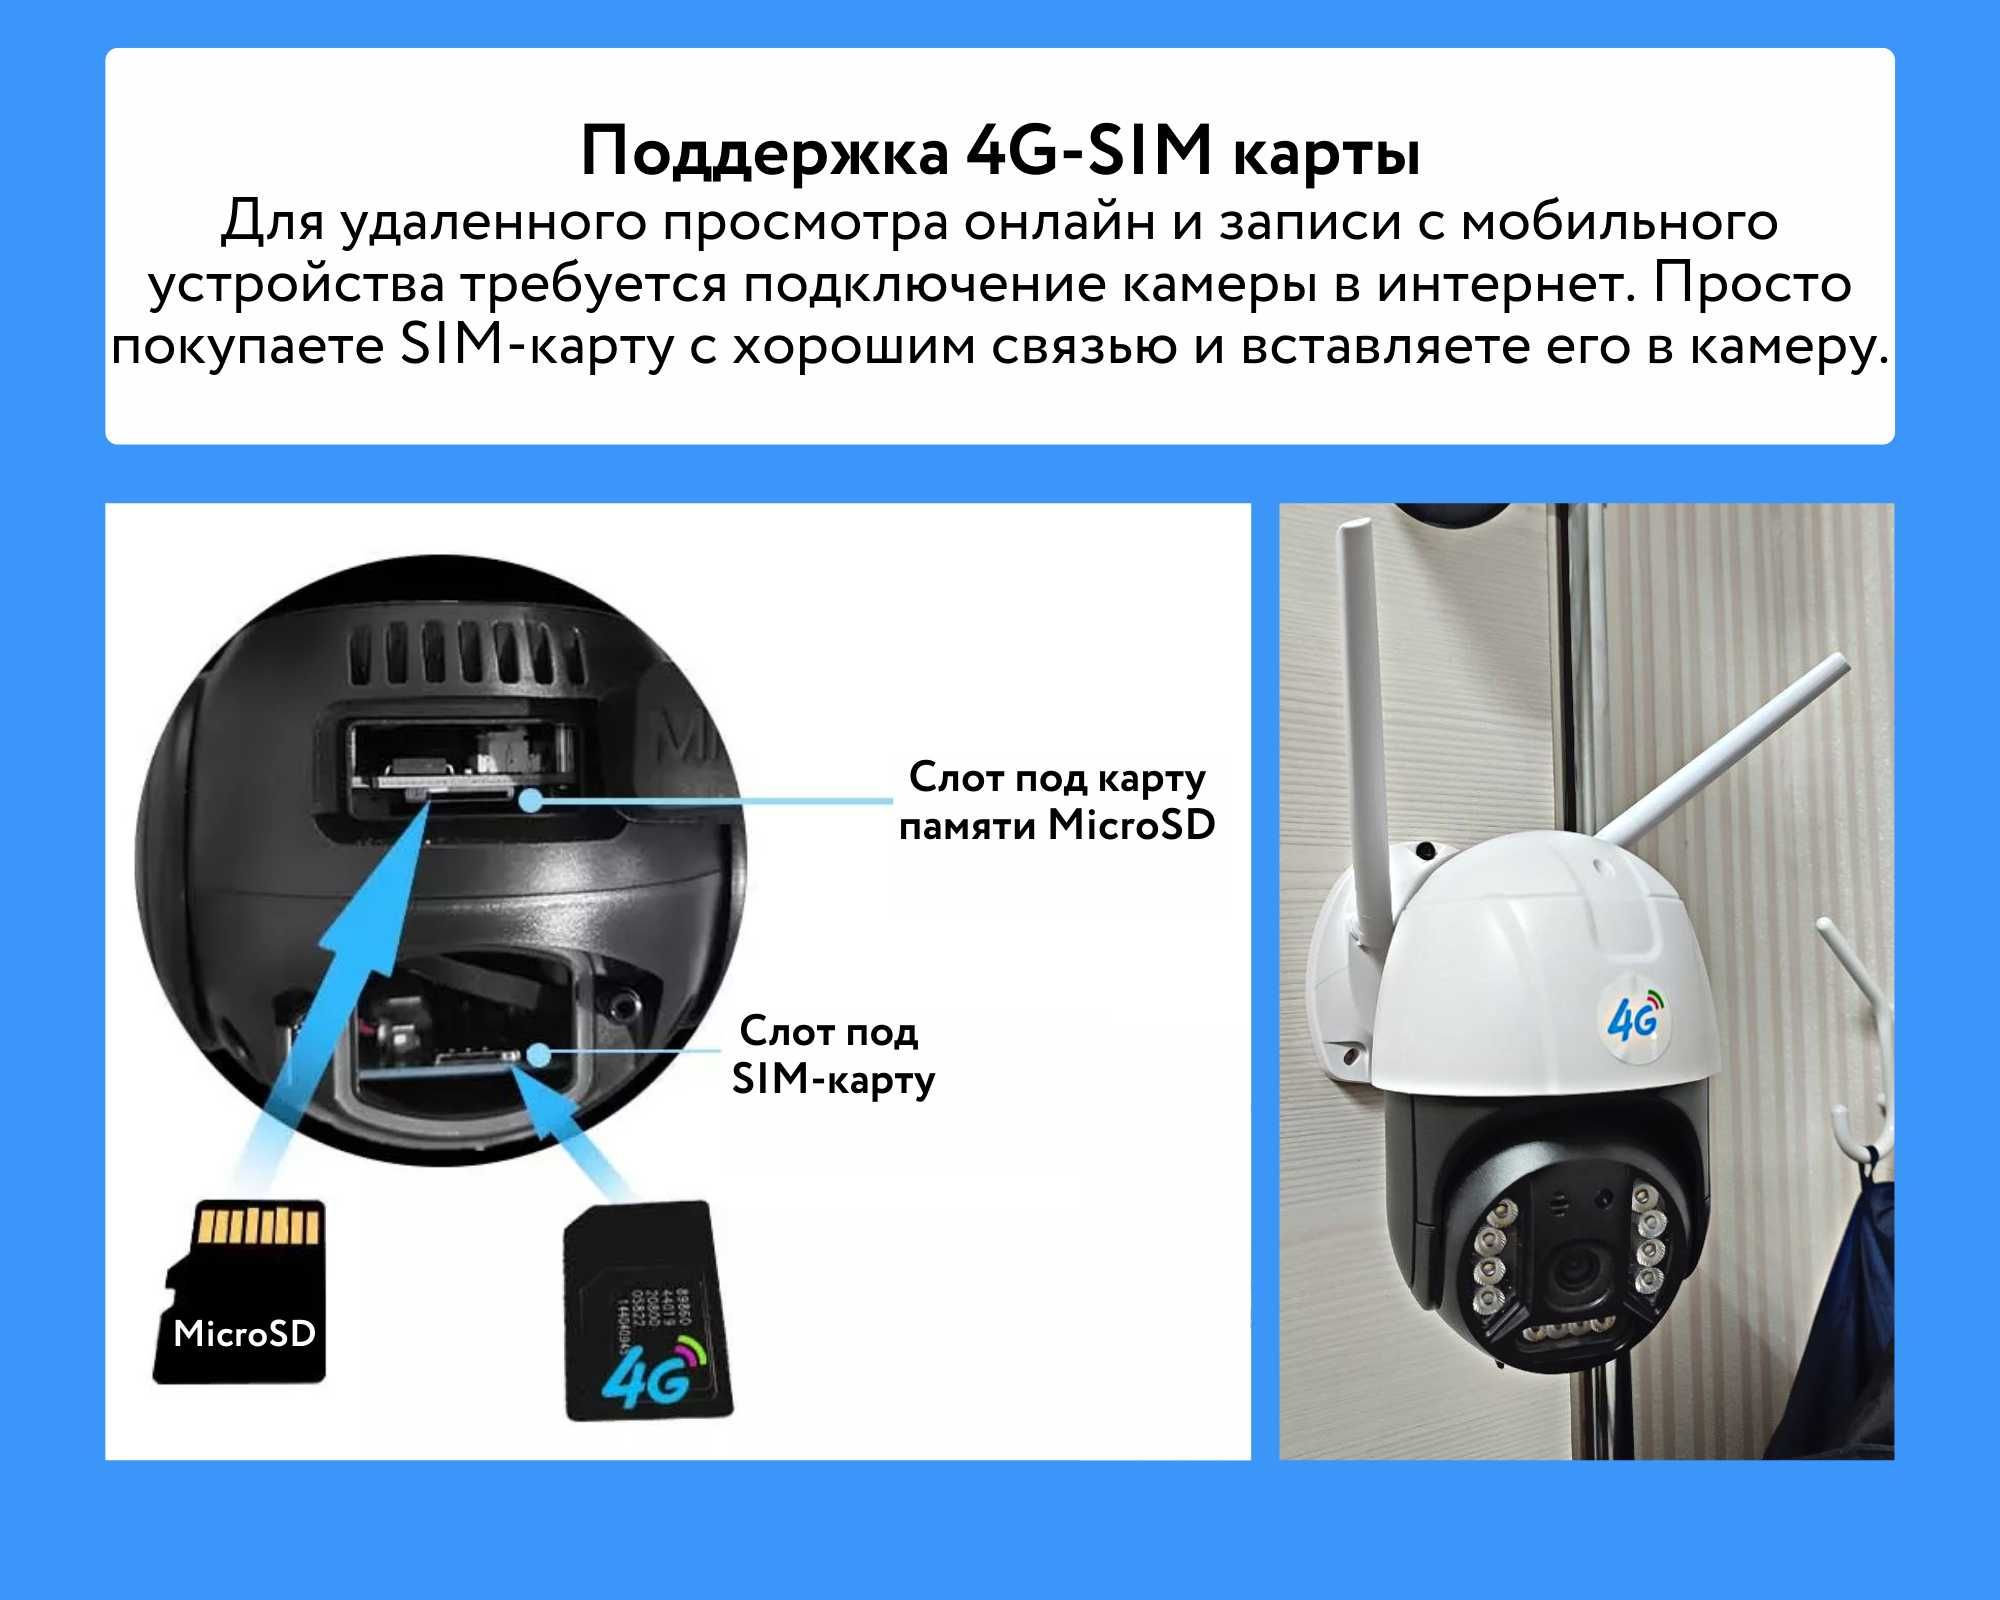 4G камера со слотом для SIM-карты